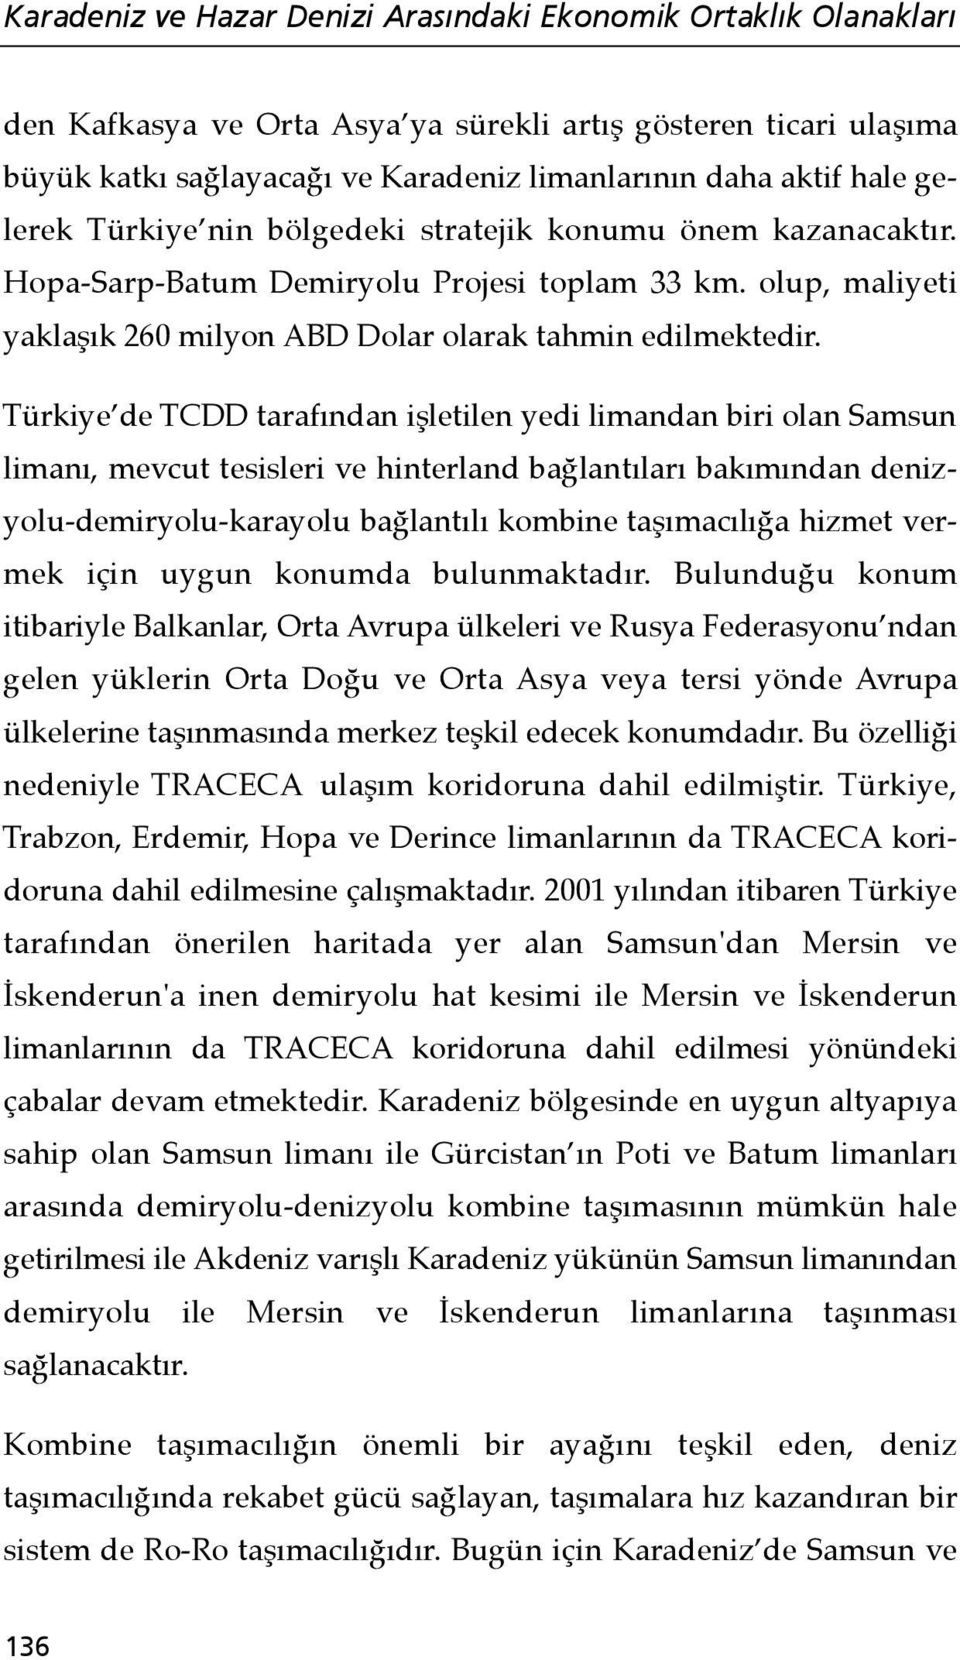 Türkiye de TCDD tarafından işletilen yedi limandan biri olan Samsun limanı, mevcut tesisleri ve hinterland bağlantıları bakımından denizyolu-demiryolu-karayolu bağlantılı kombine taşımacılığa hizmet